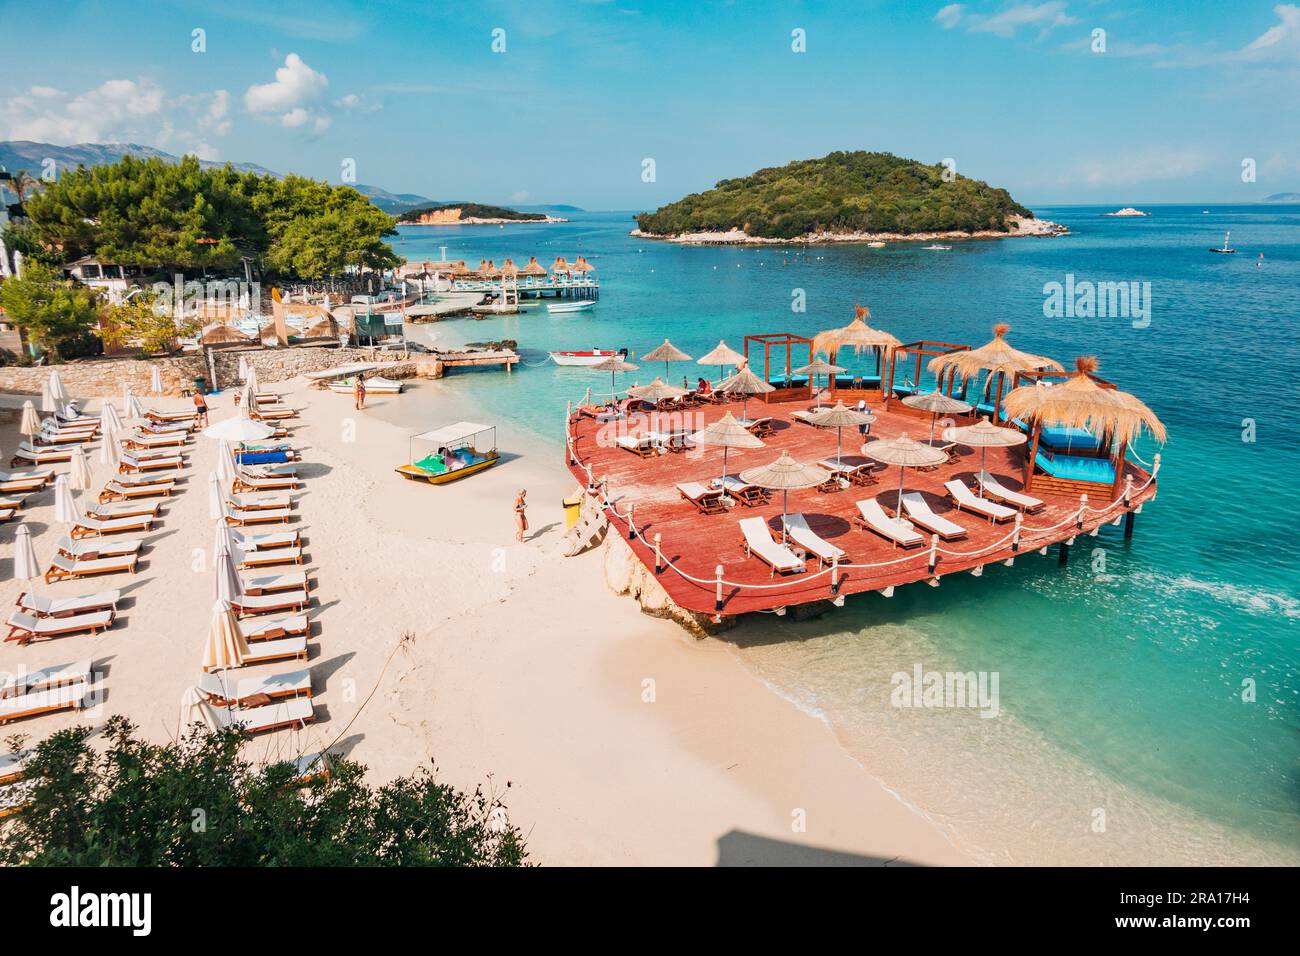 Lettini, ombrelloni, una terrazza in legno e acque turchesi che aspettano i turisti a Rilinda Beach, Ksamil, Albania Foto Stock